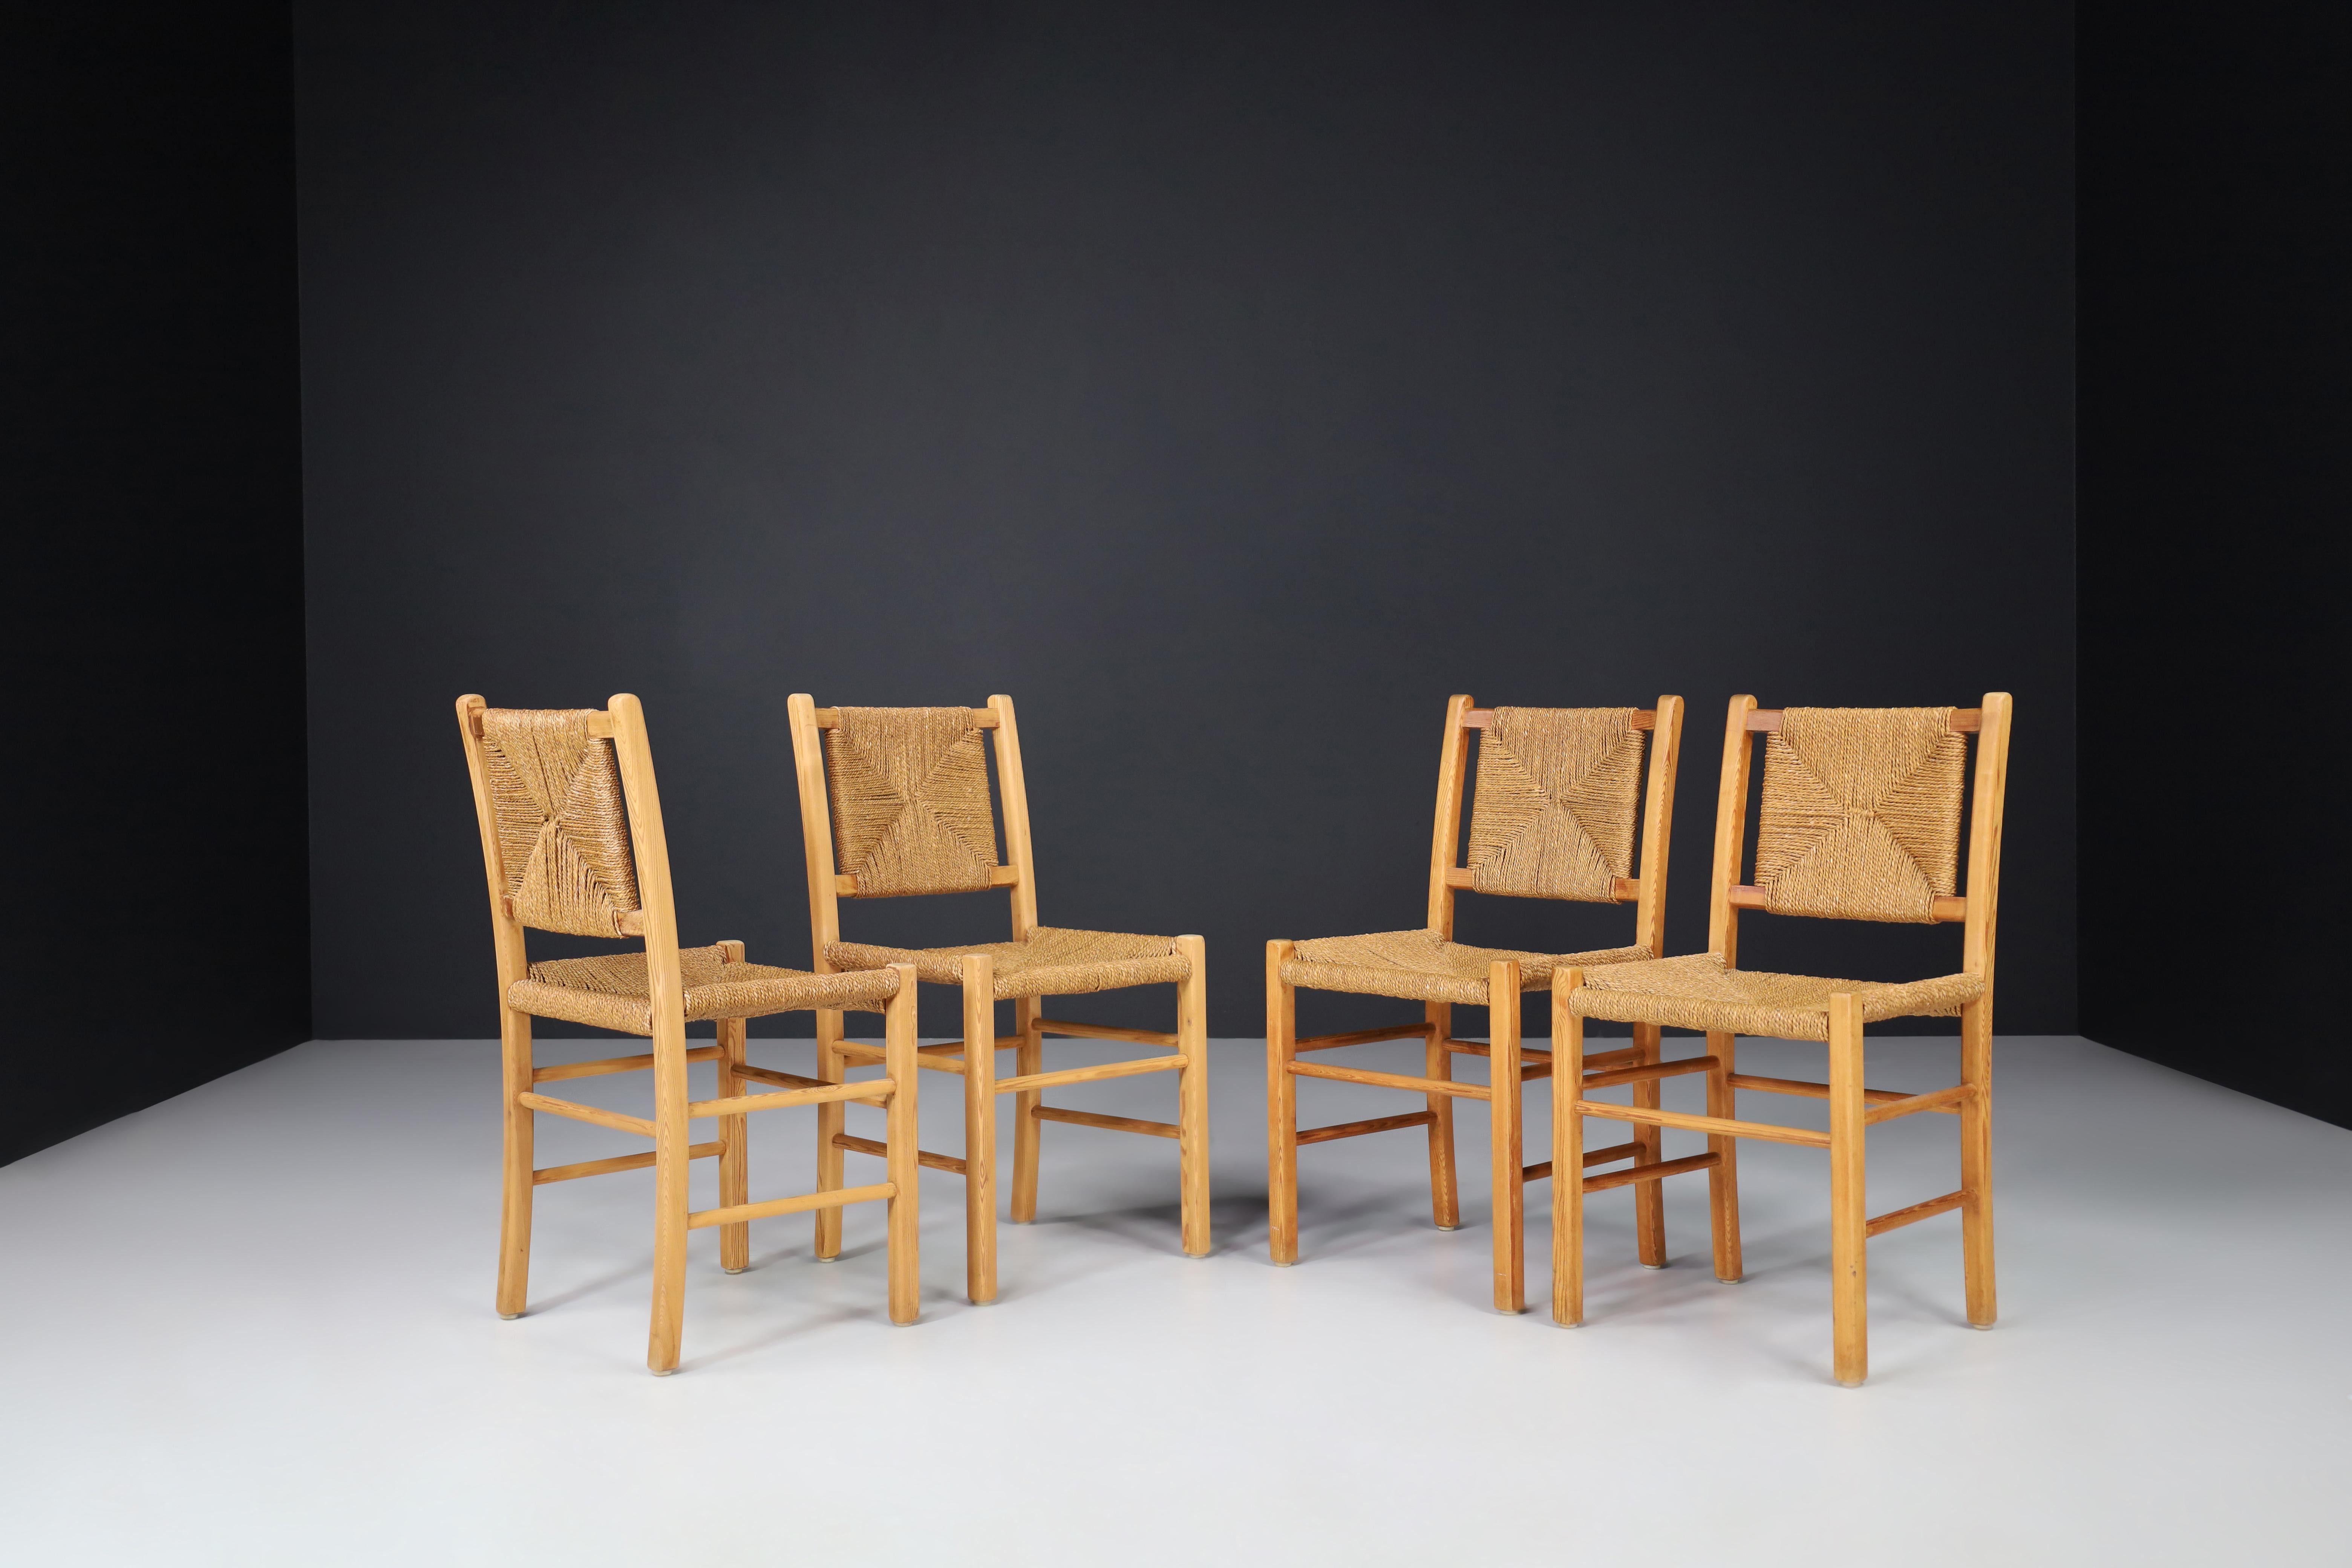 Chaises de salle à manger en pin et corde, France 1960. 

Ces chaises sont fabriquées en pin massif et les sièges et dossiers sont en corde tressée à la main. Les chaises sont en bon état vintage et peuvent être utilisées comme chaises de salle à